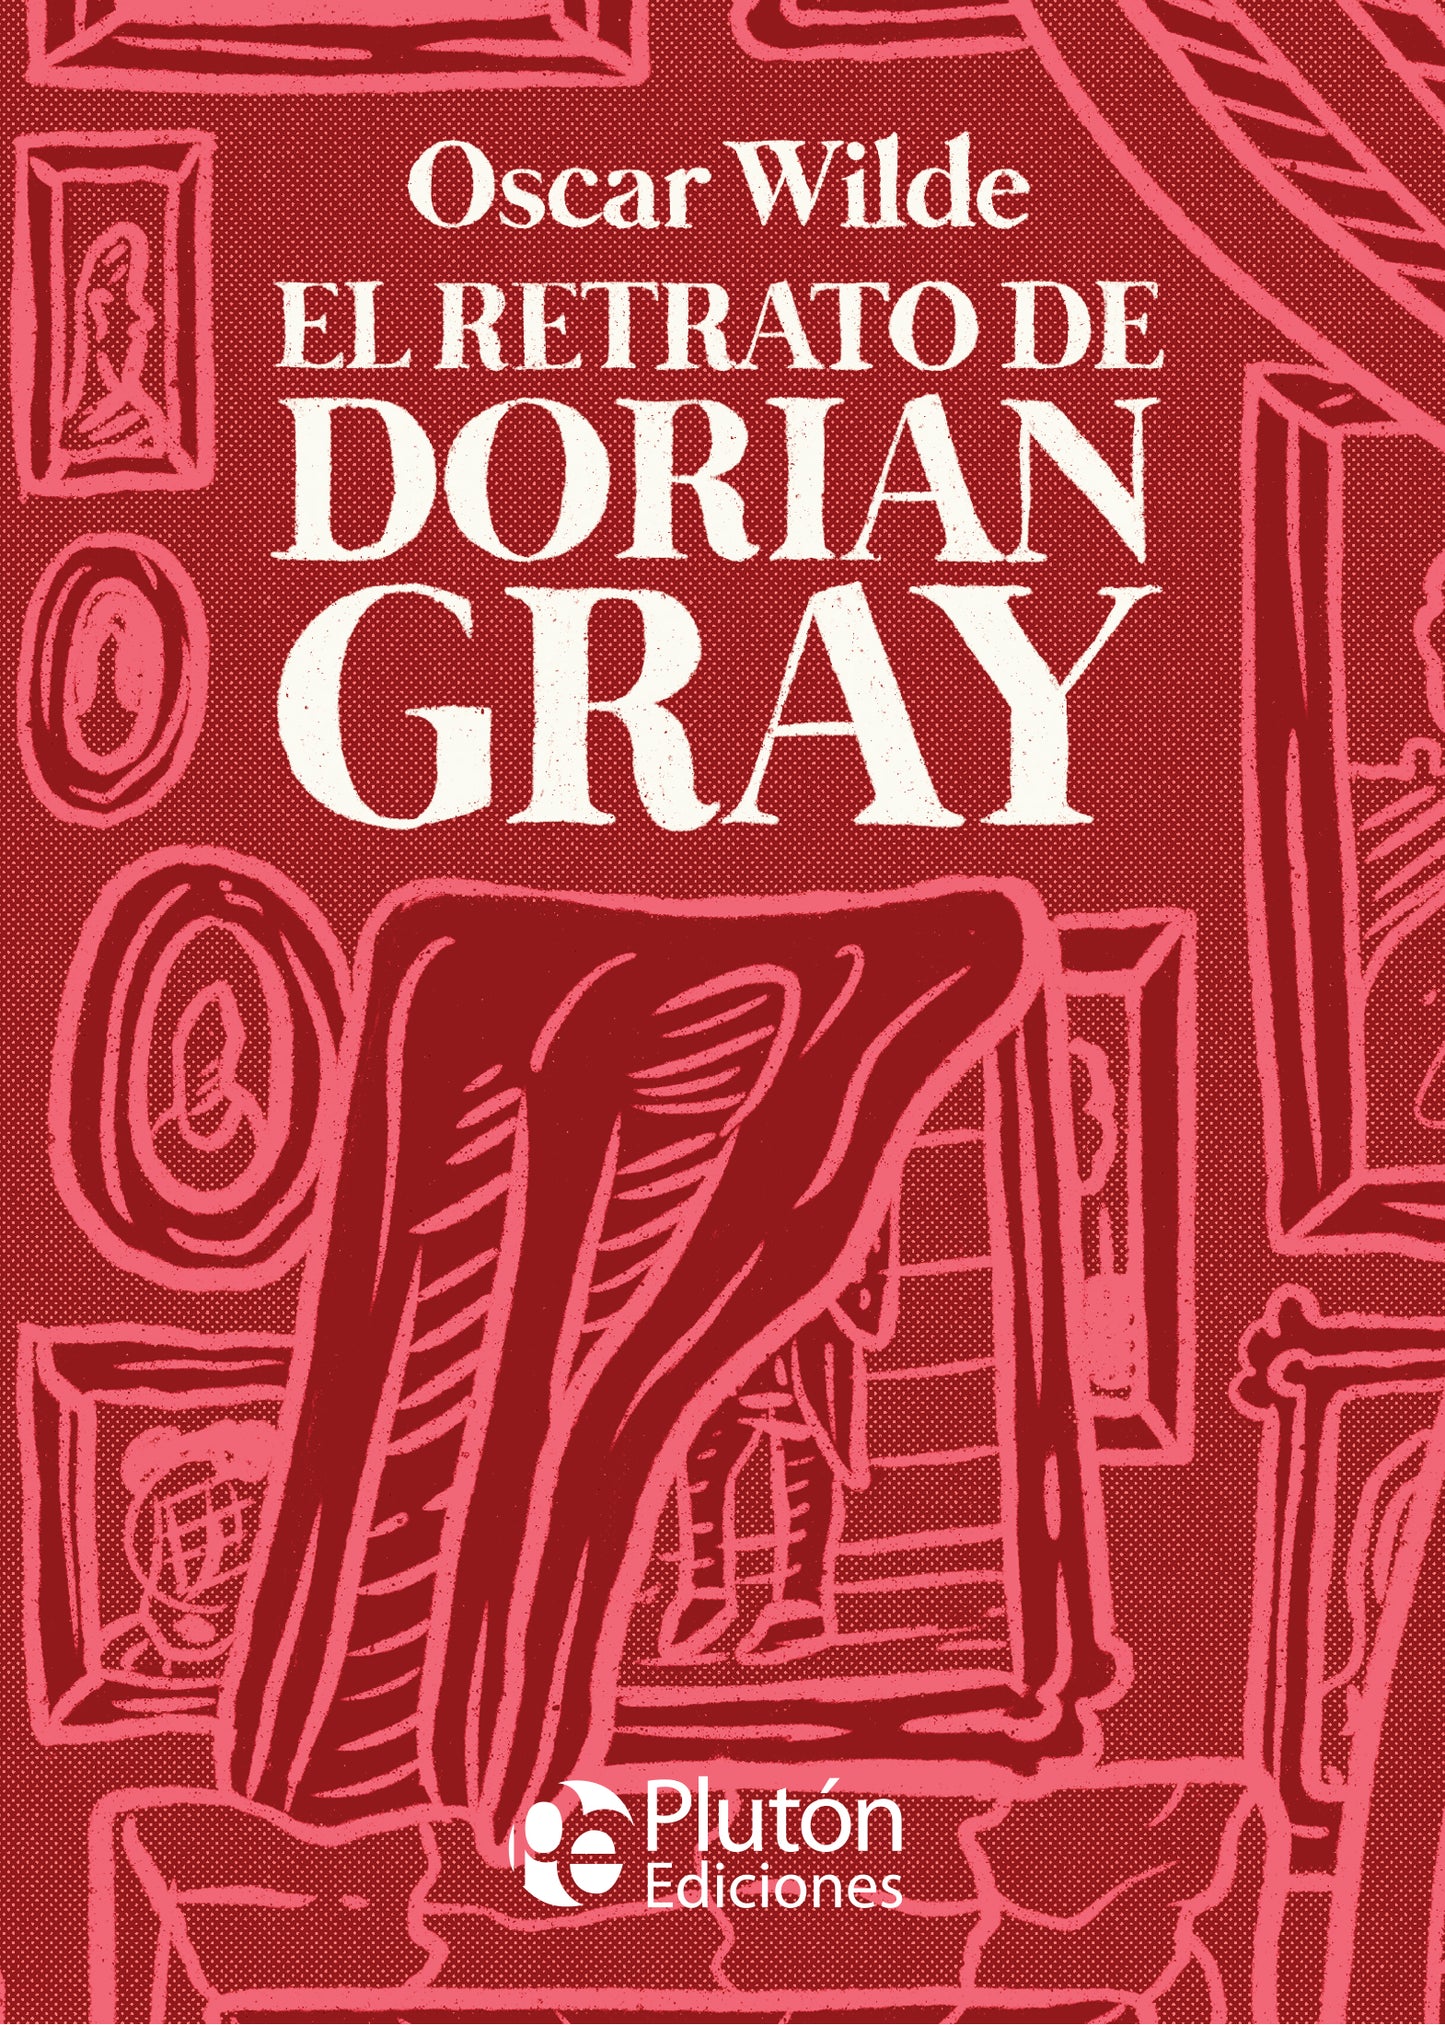 Retrato Dorian Gray